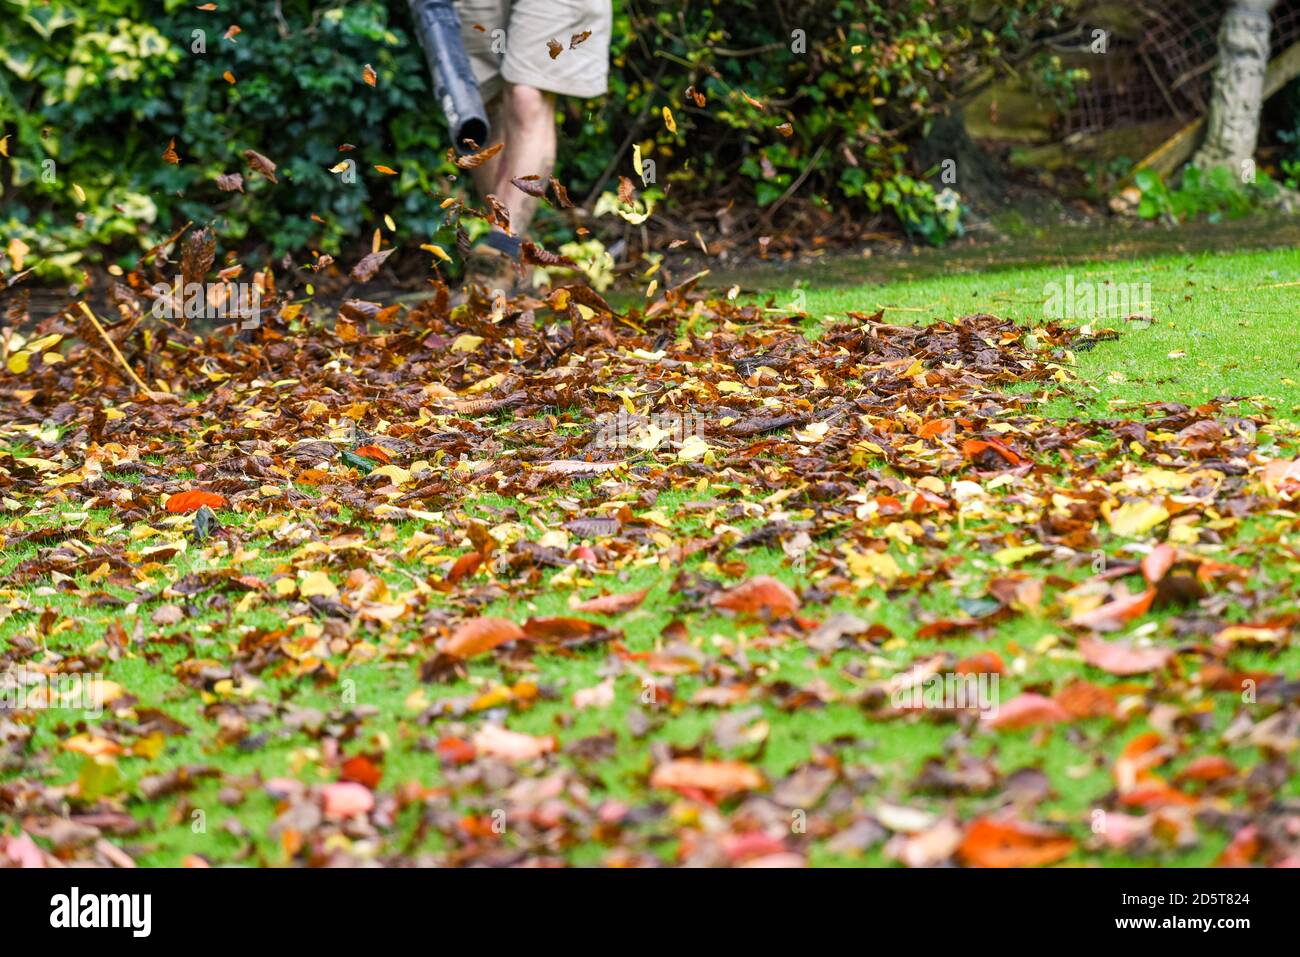 Ein Mann, der einen Laubbbläser benutzt, um den Herbst abzuräumen Blätter aus dem Garten im Herbst Stockfoto